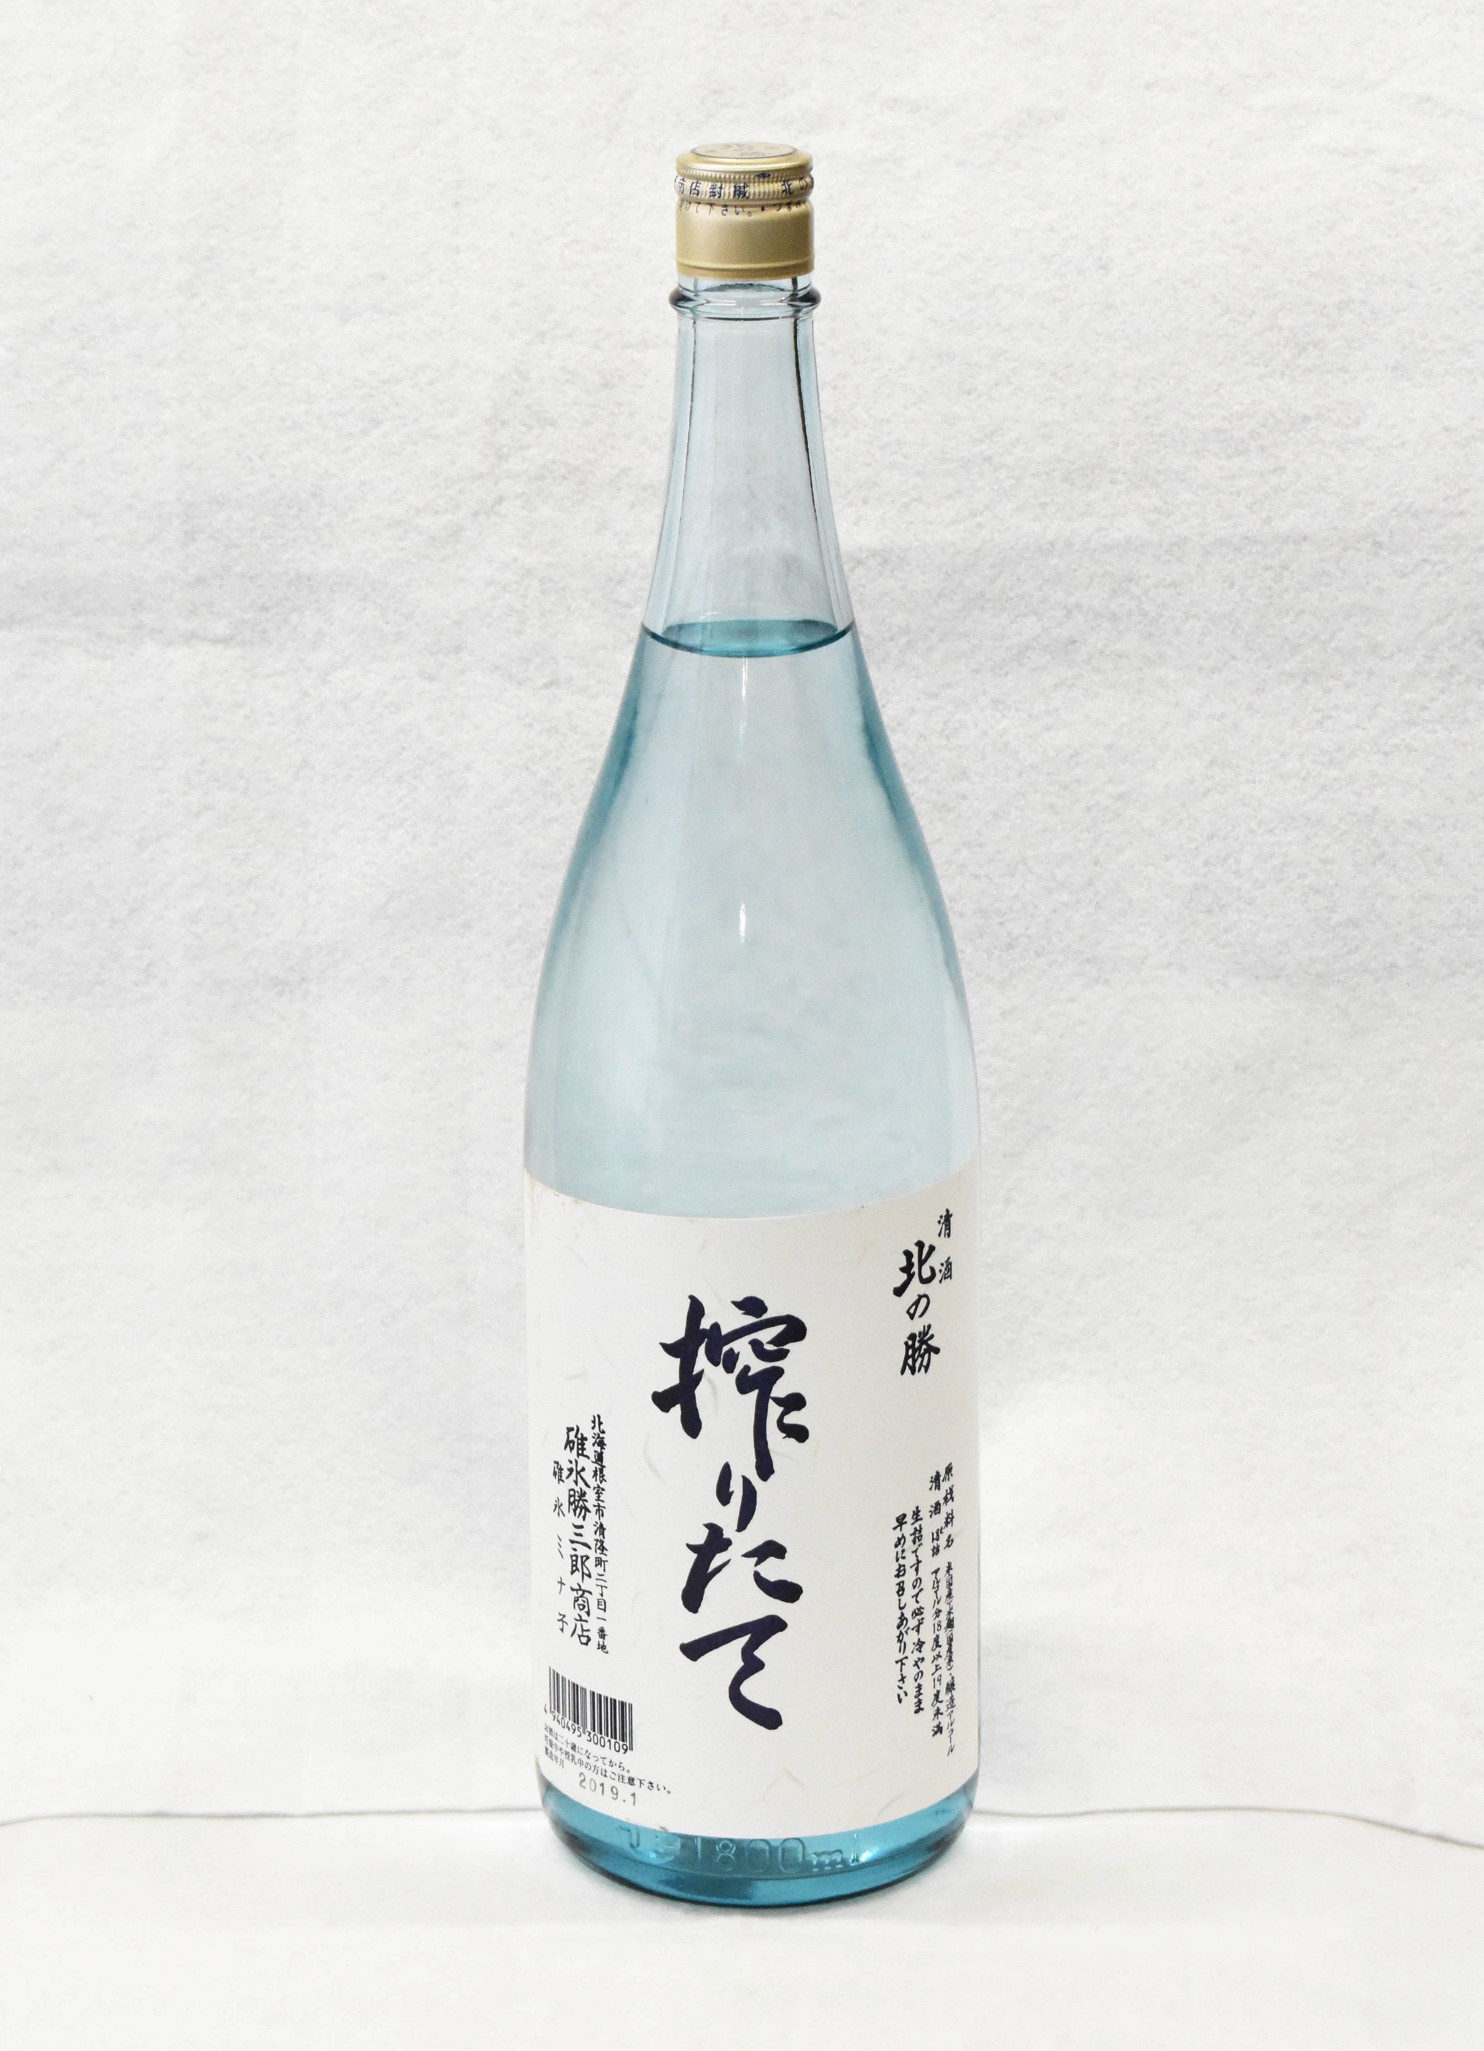 限定酒「搾りたて」きょう蔵出し 根室地酒「北の勝」 – 釧路新聞電子版